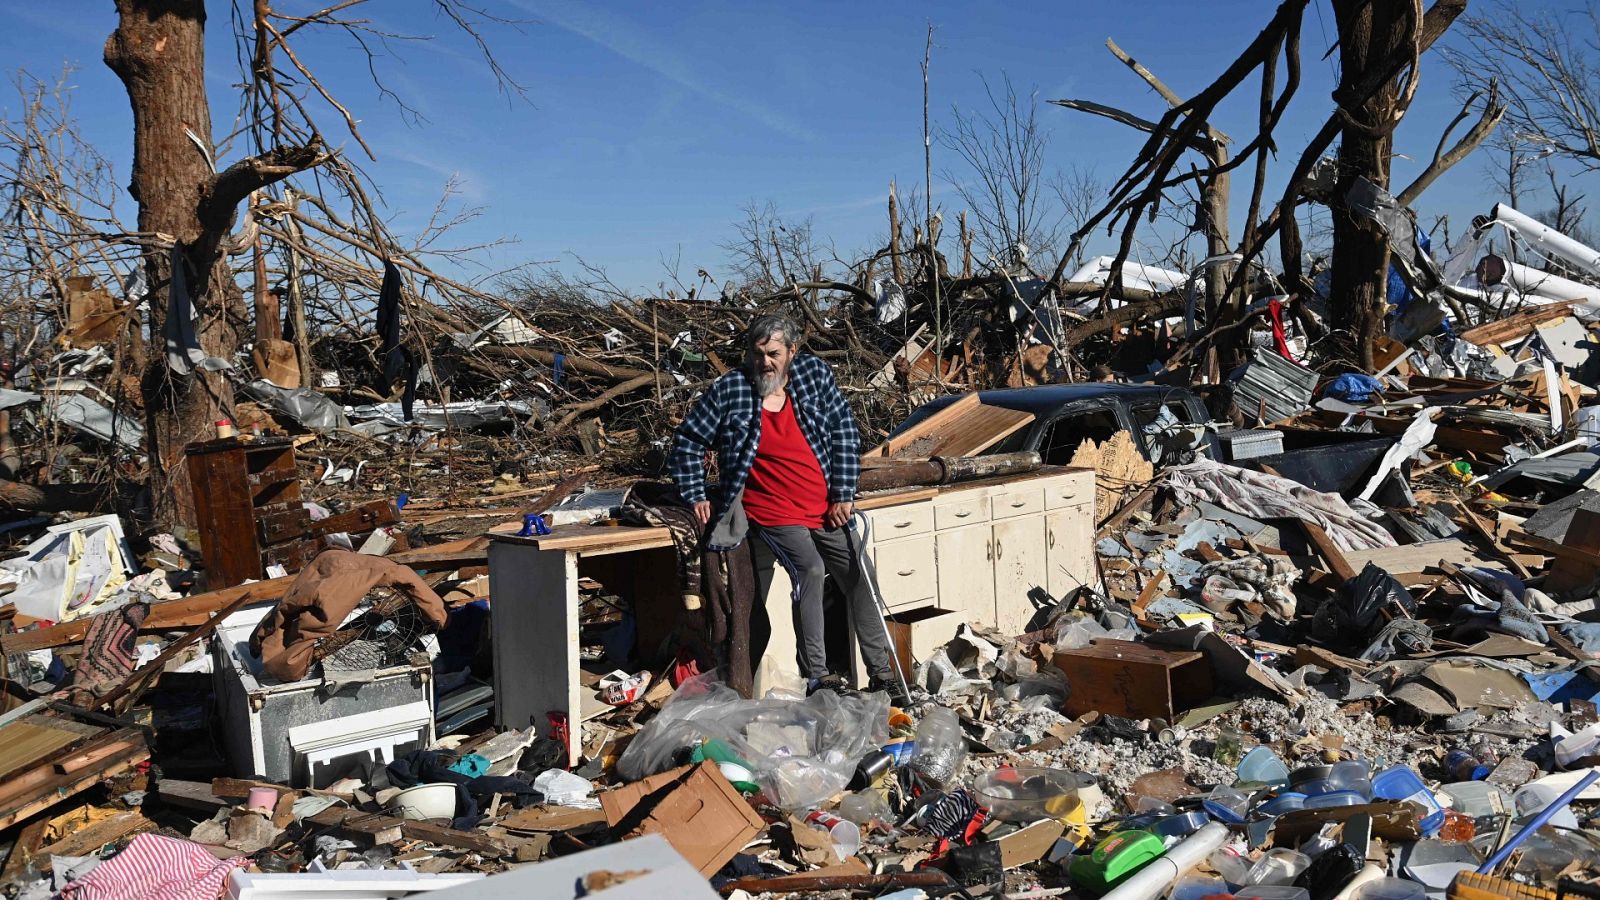 Mayfield tras los tornados: "Parece que estalló una bomba"